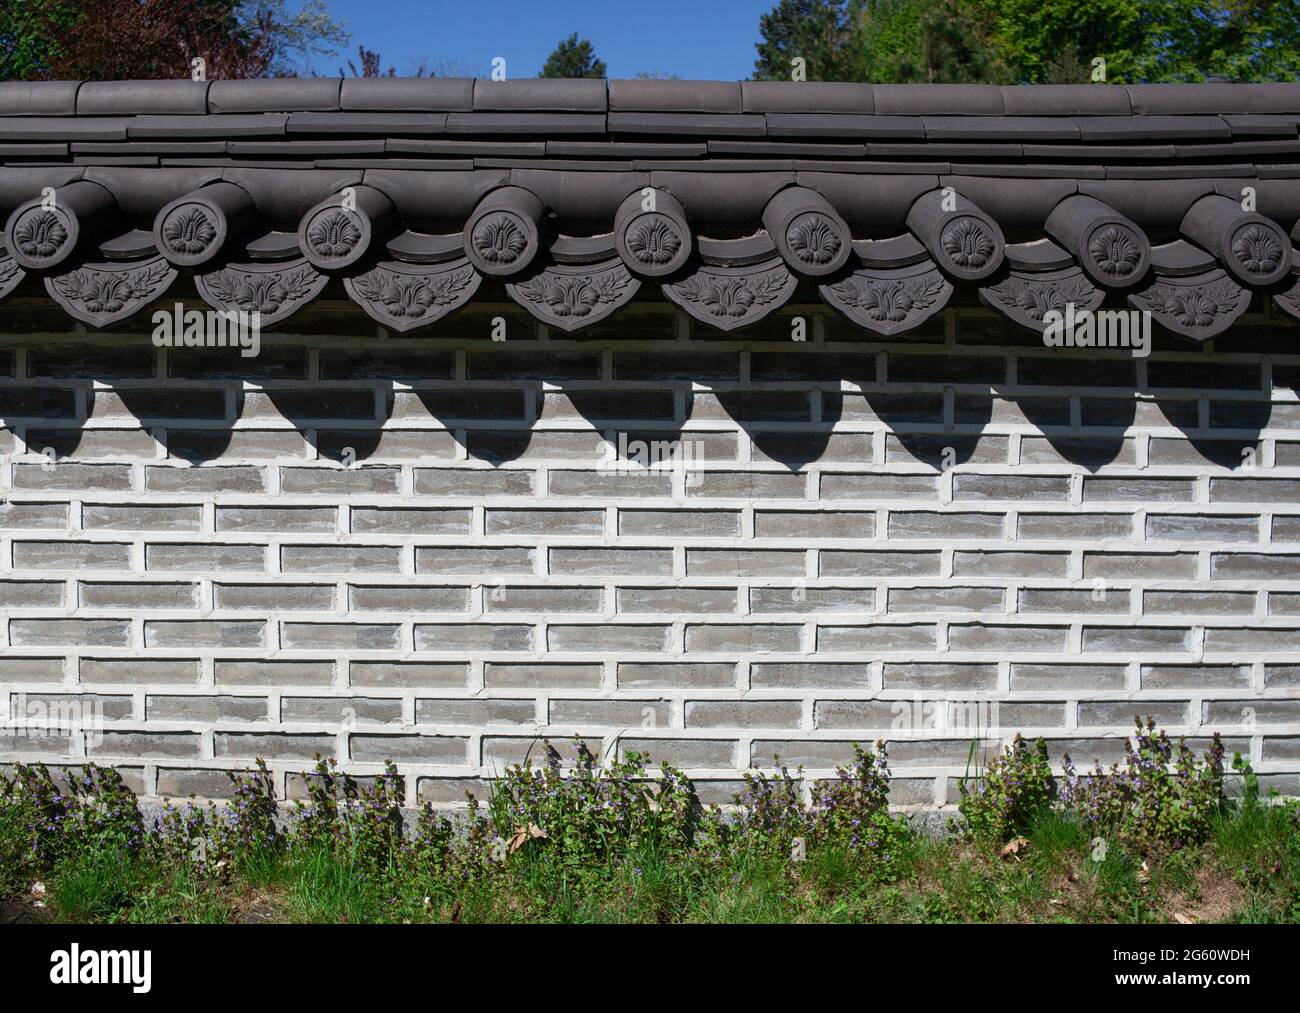 Ziegelzaun. Backstein Muster Textur Hintergrund. Dachziegel am Steinzaun. Wand im antiken Stil dekoriert. Stockfoto